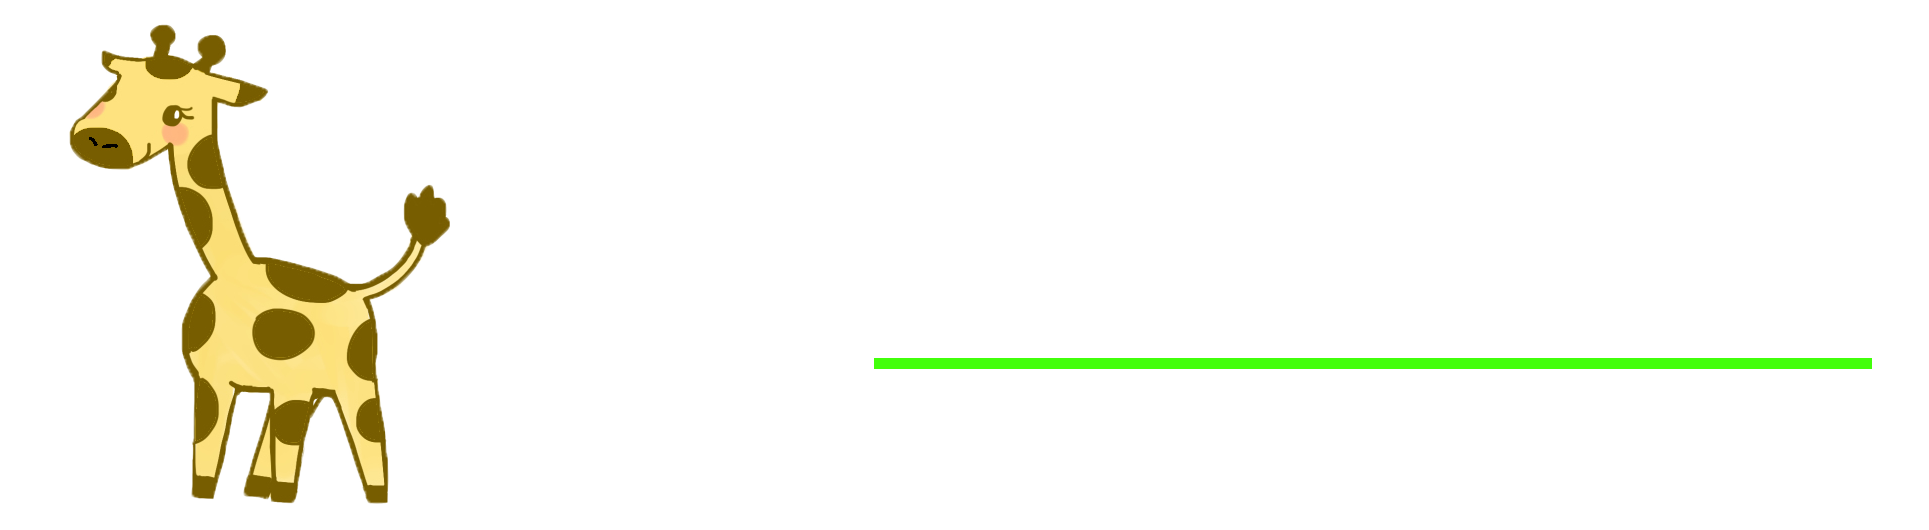 Igreencanp